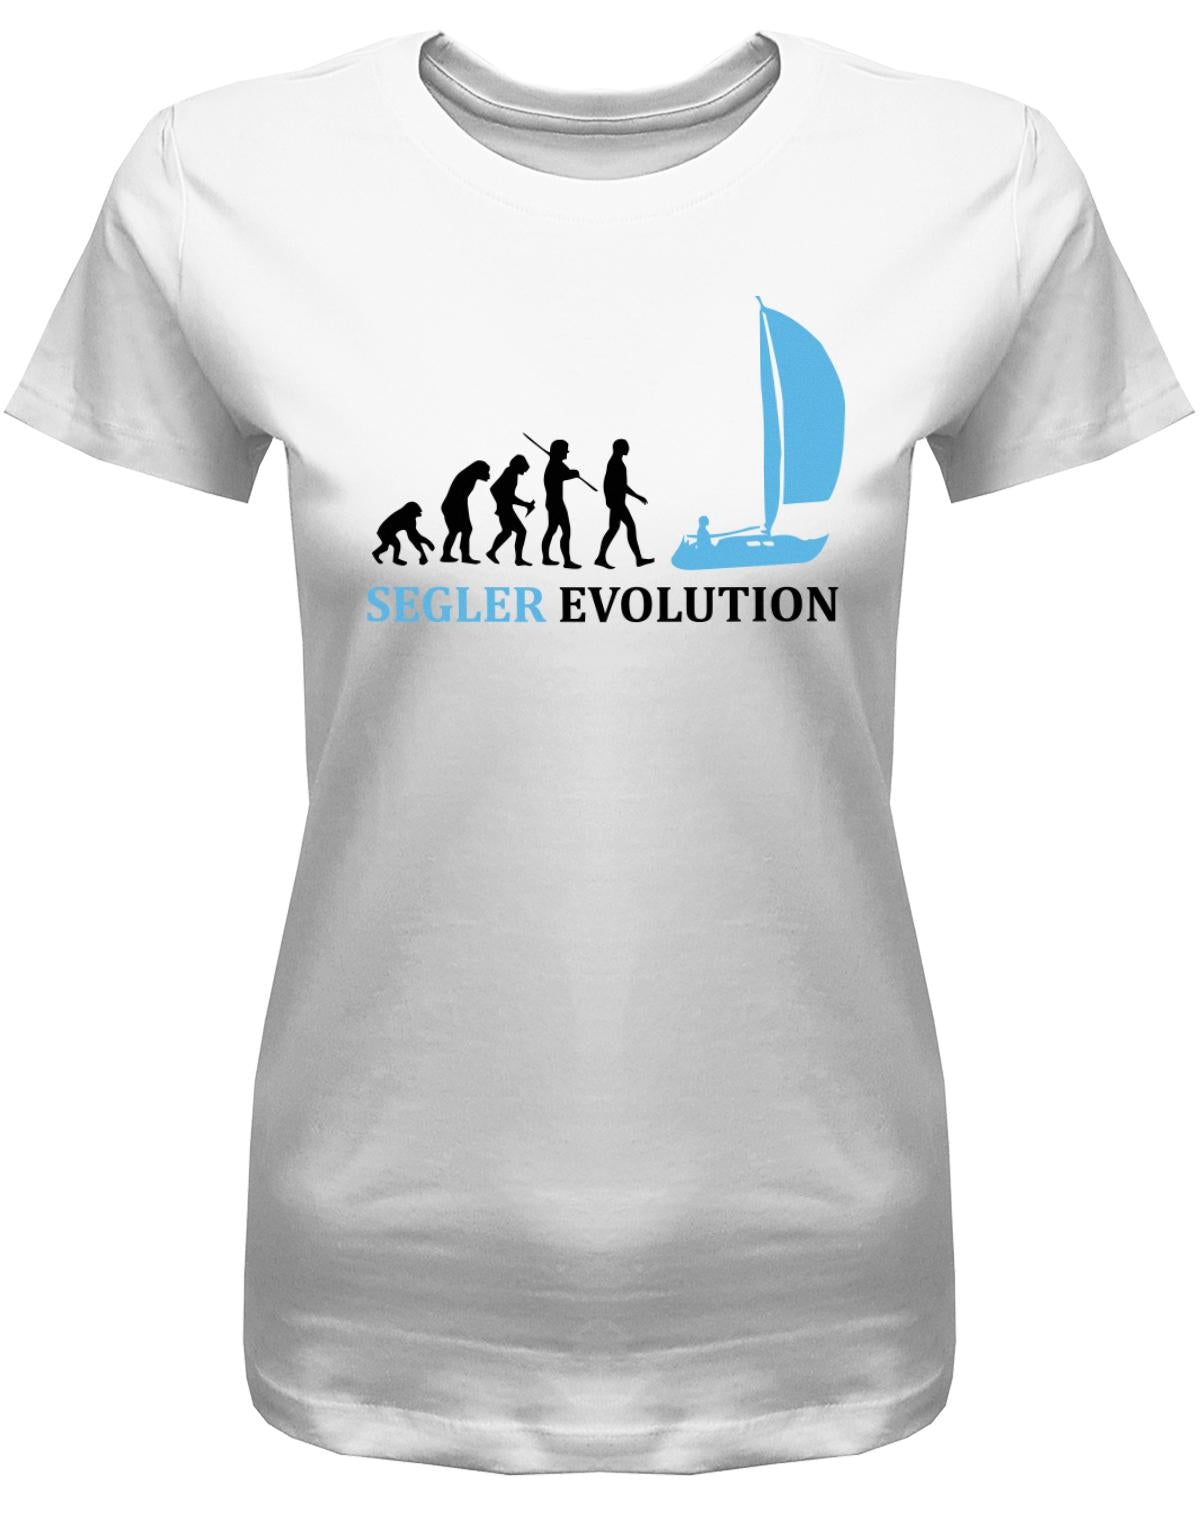 Segler-Evolution-Damen-Shirt-Weiss